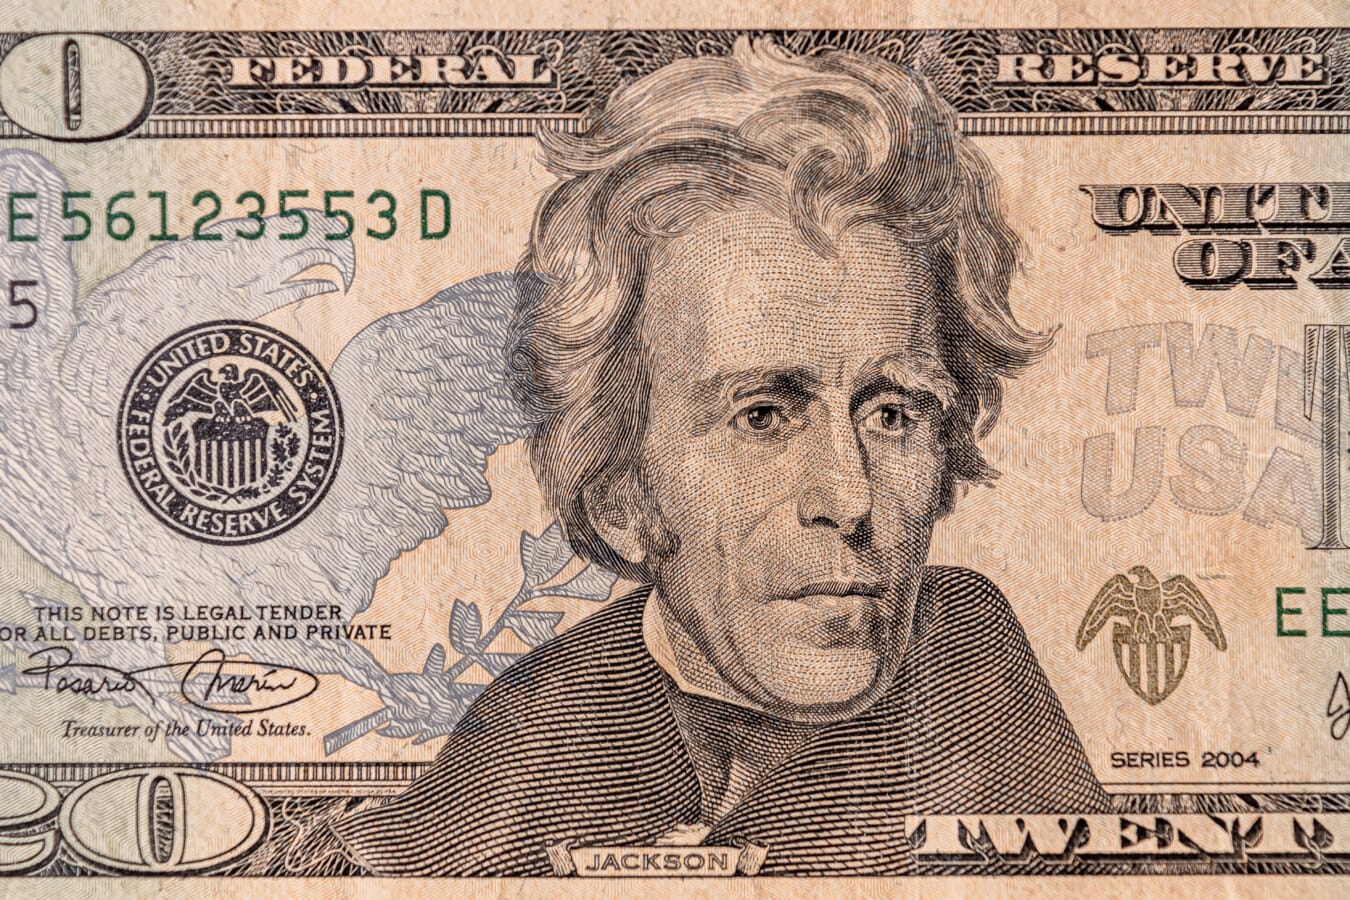 アンドリュー・ジャクソン, アメリカ合衆国 20 ドル札, 20 ドル, 紙のお金, 履歴, 顔, 代表取締役社長, 金融, 紙, お金, 通貨